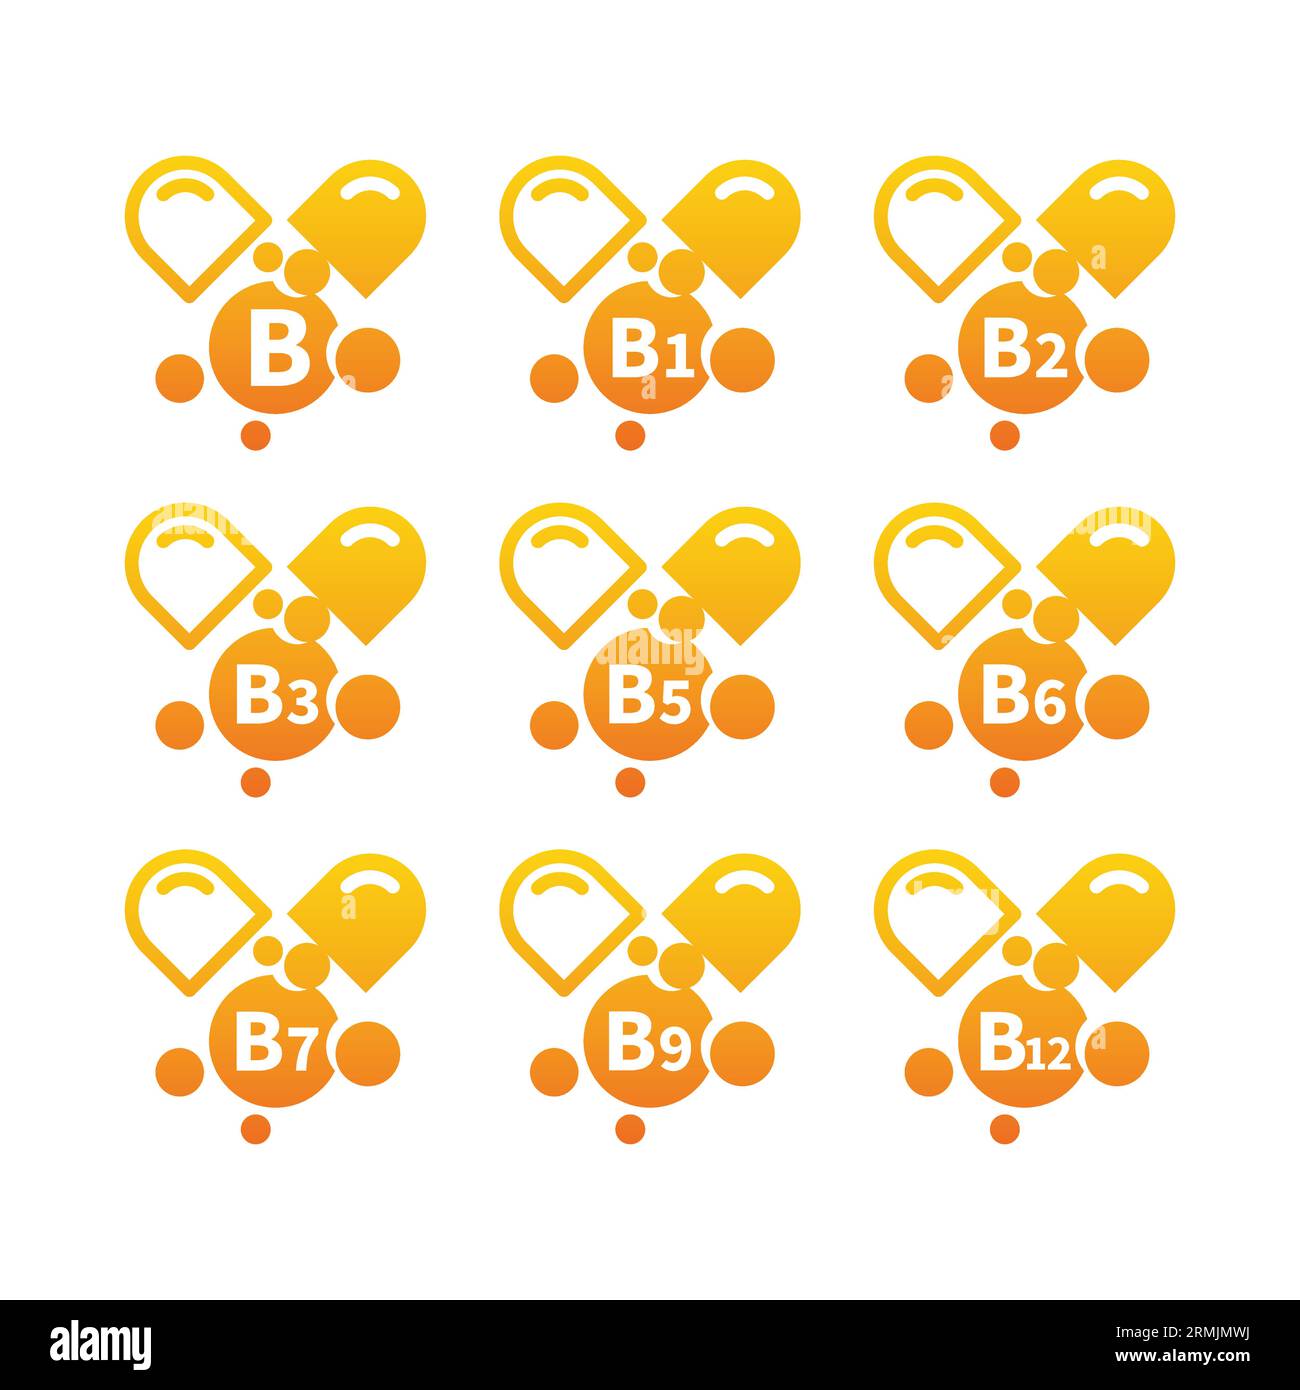 Vitamin-b-Komplex-Kapseln Symbolset. Symbole Vitamine b1, b3, b9 und b12. Stock Vektor